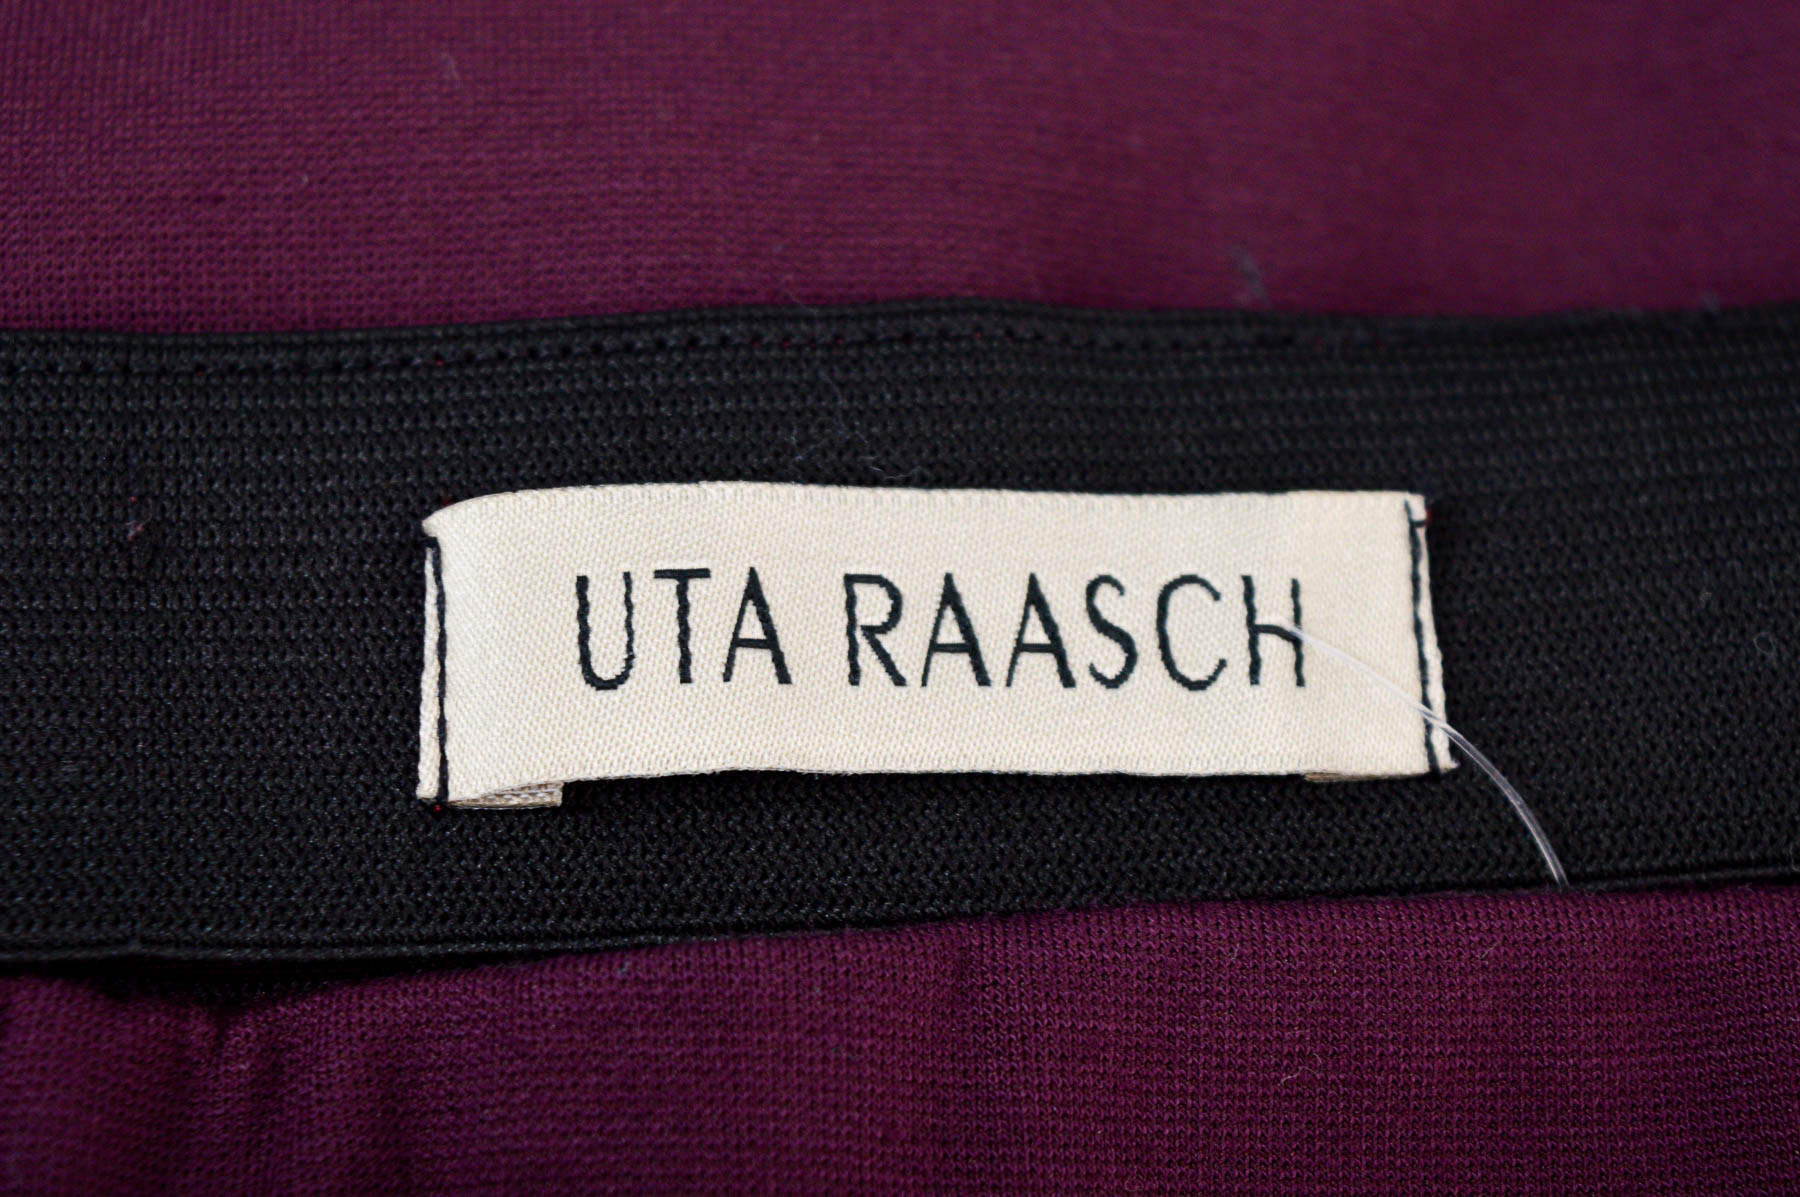 Skirt - UTA RAASCH - 2